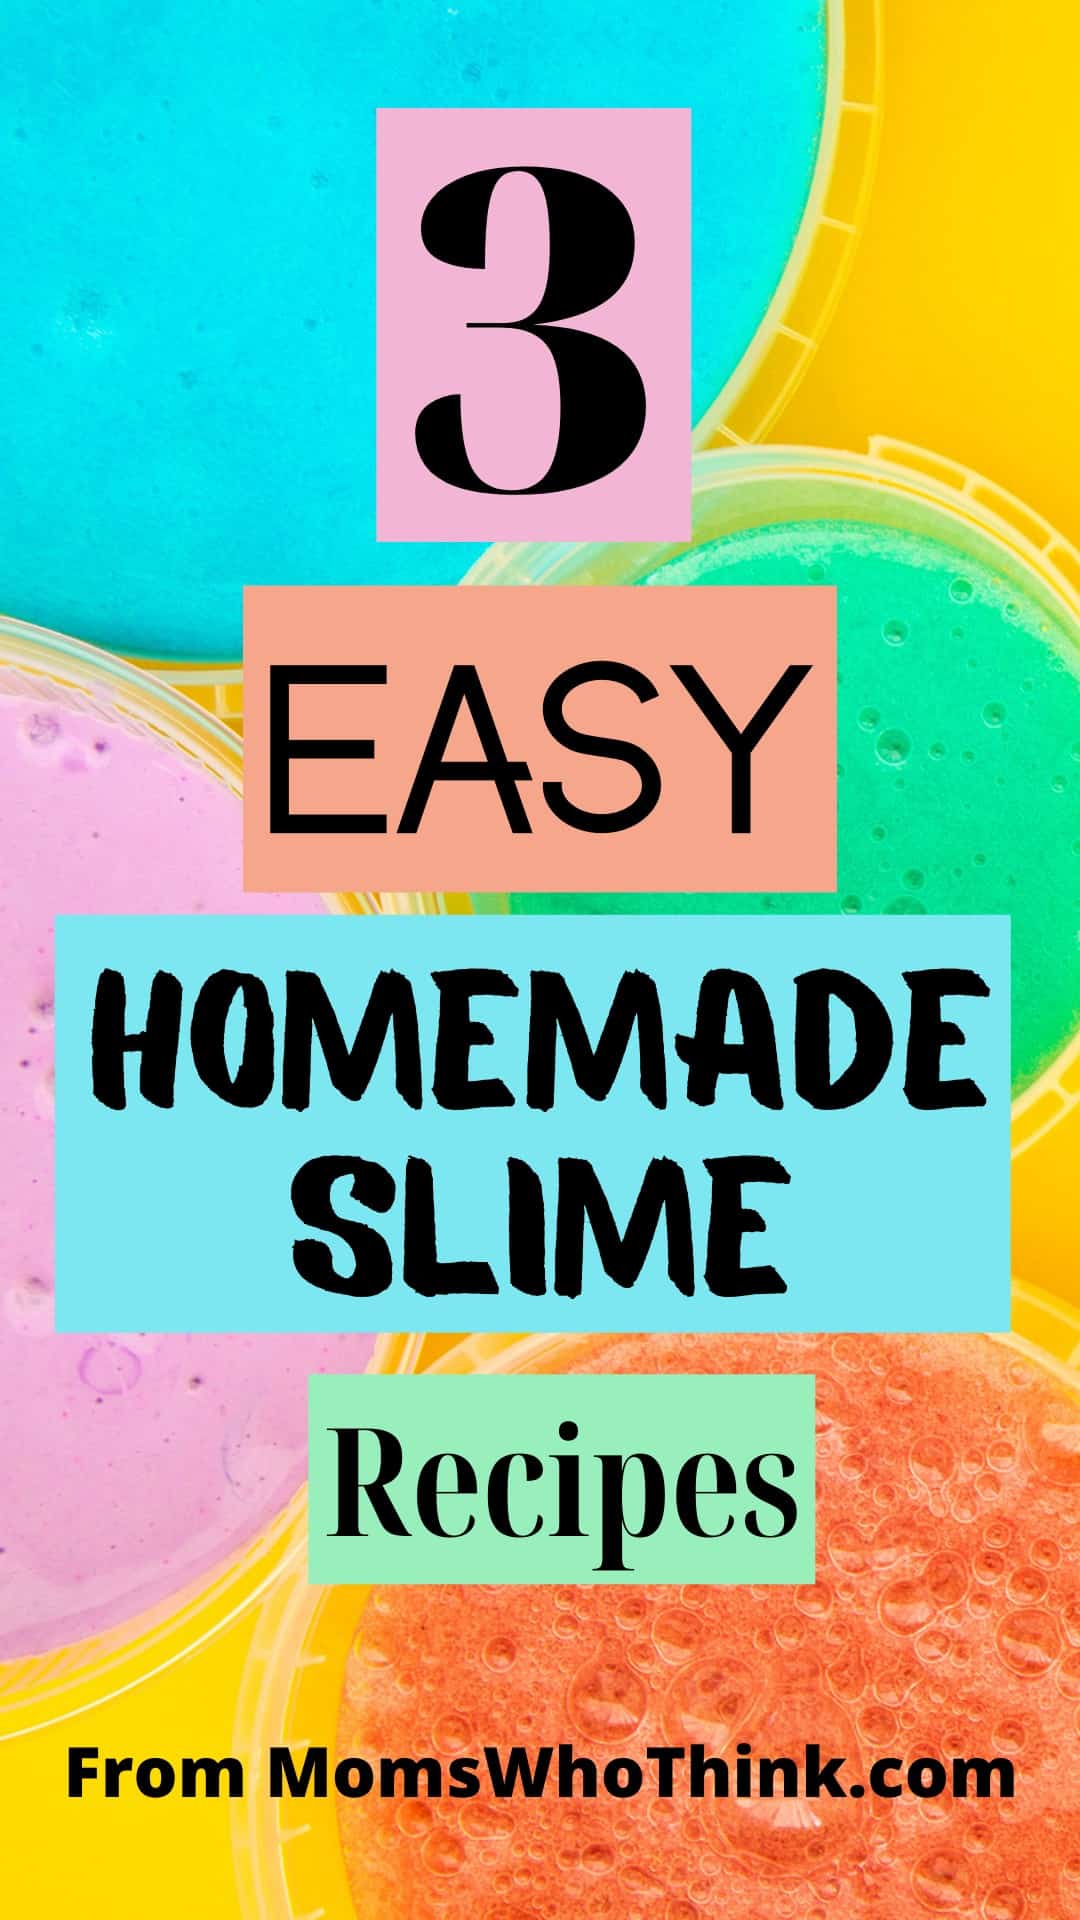 3 Easy Homemade Slime Recipes